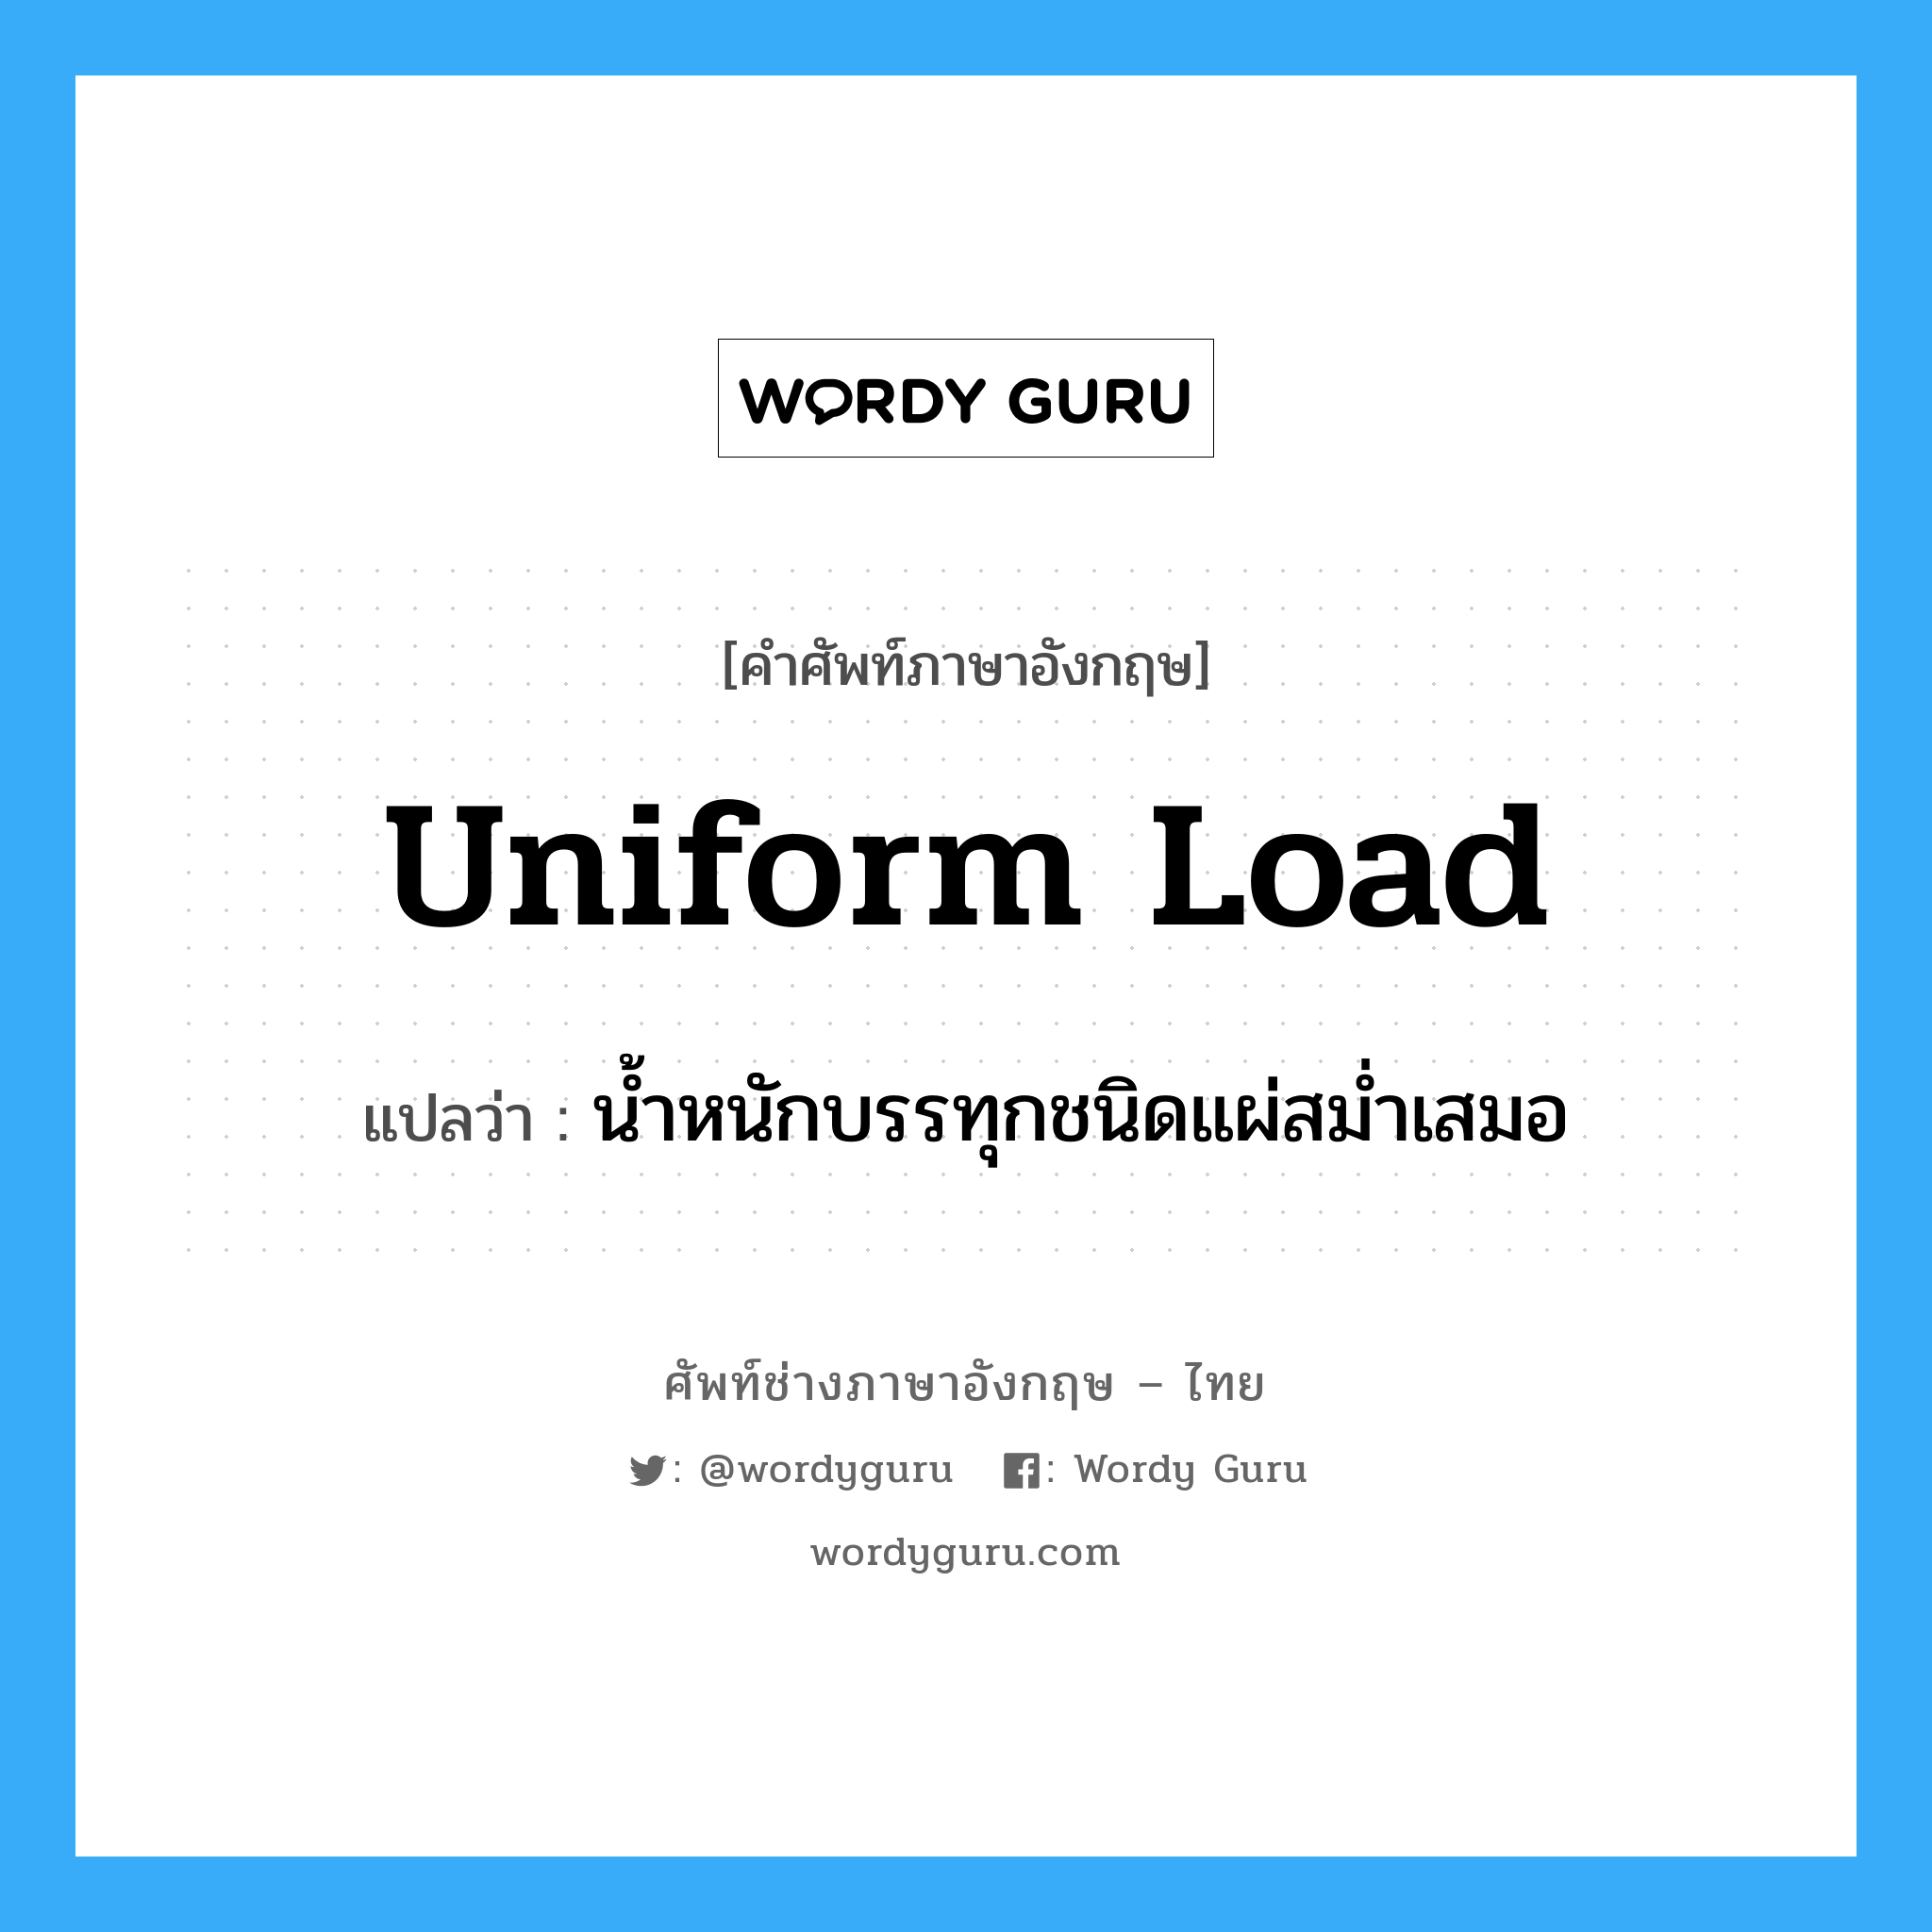 น้ำหนักบรรทุกชนิดแผ่สม่ำเสมอ ภาษาอังกฤษ?, คำศัพท์ช่างภาษาอังกฤษ - ไทย น้ำหนักบรรทุกชนิดแผ่สม่ำเสมอ คำศัพท์ภาษาอังกฤษ น้ำหนักบรรทุกชนิดแผ่สม่ำเสมอ แปลว่า uniform load